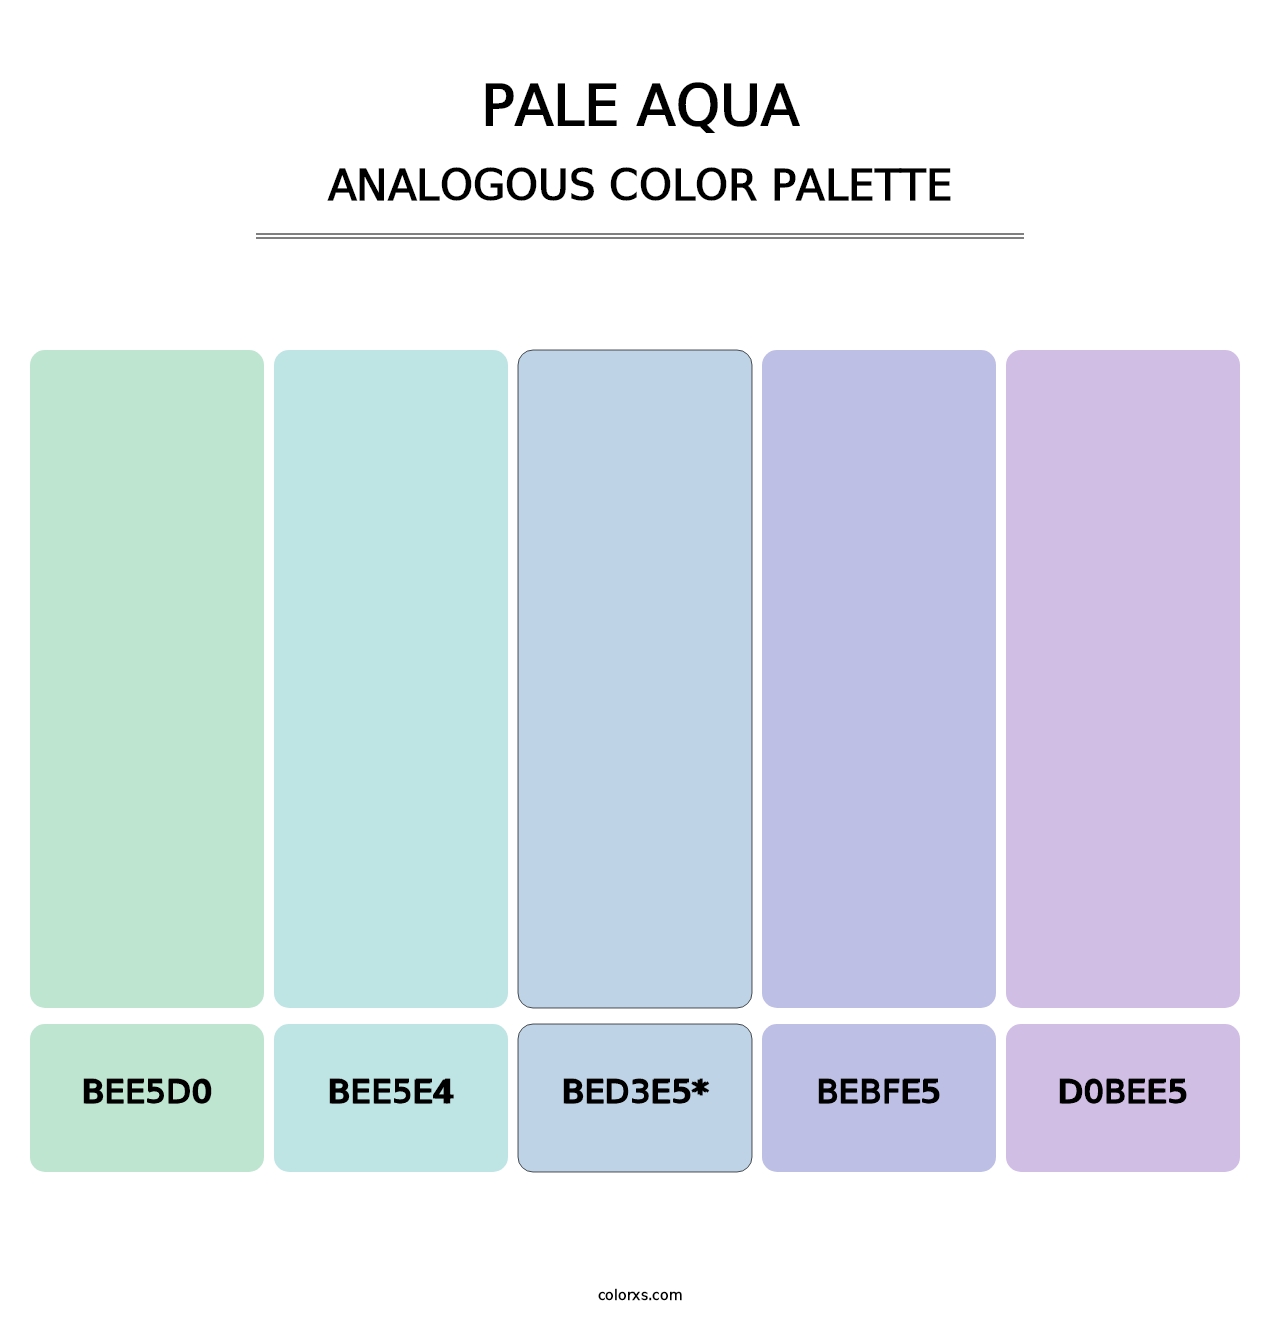 Pale Aqua - Analogous Color Palette